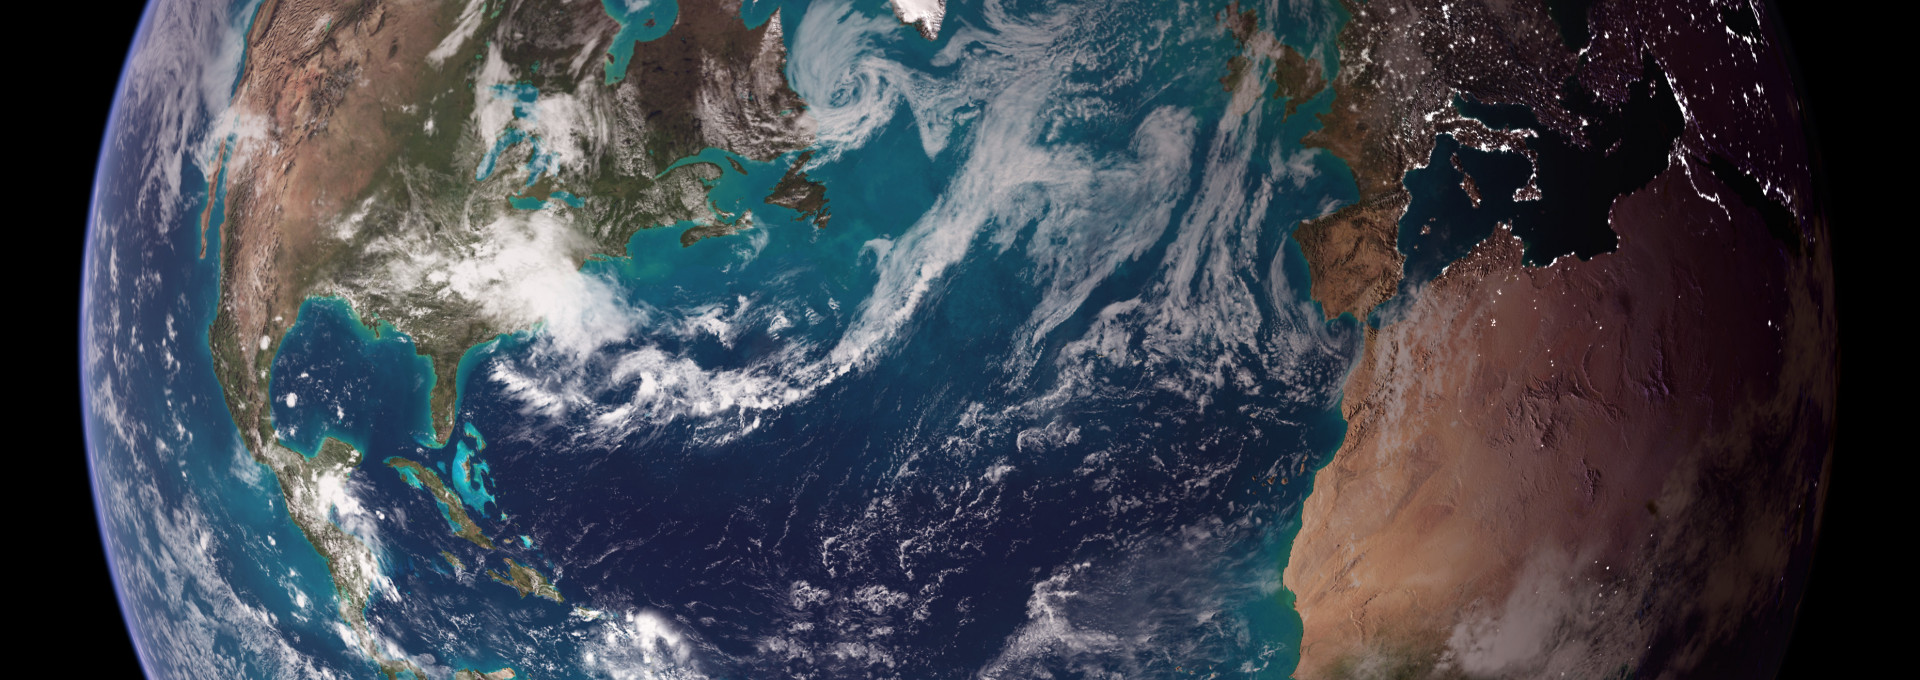 Planetare Grenzen Neun Leitplanken für die Zukunft Helmholtz-Klima-Initiative